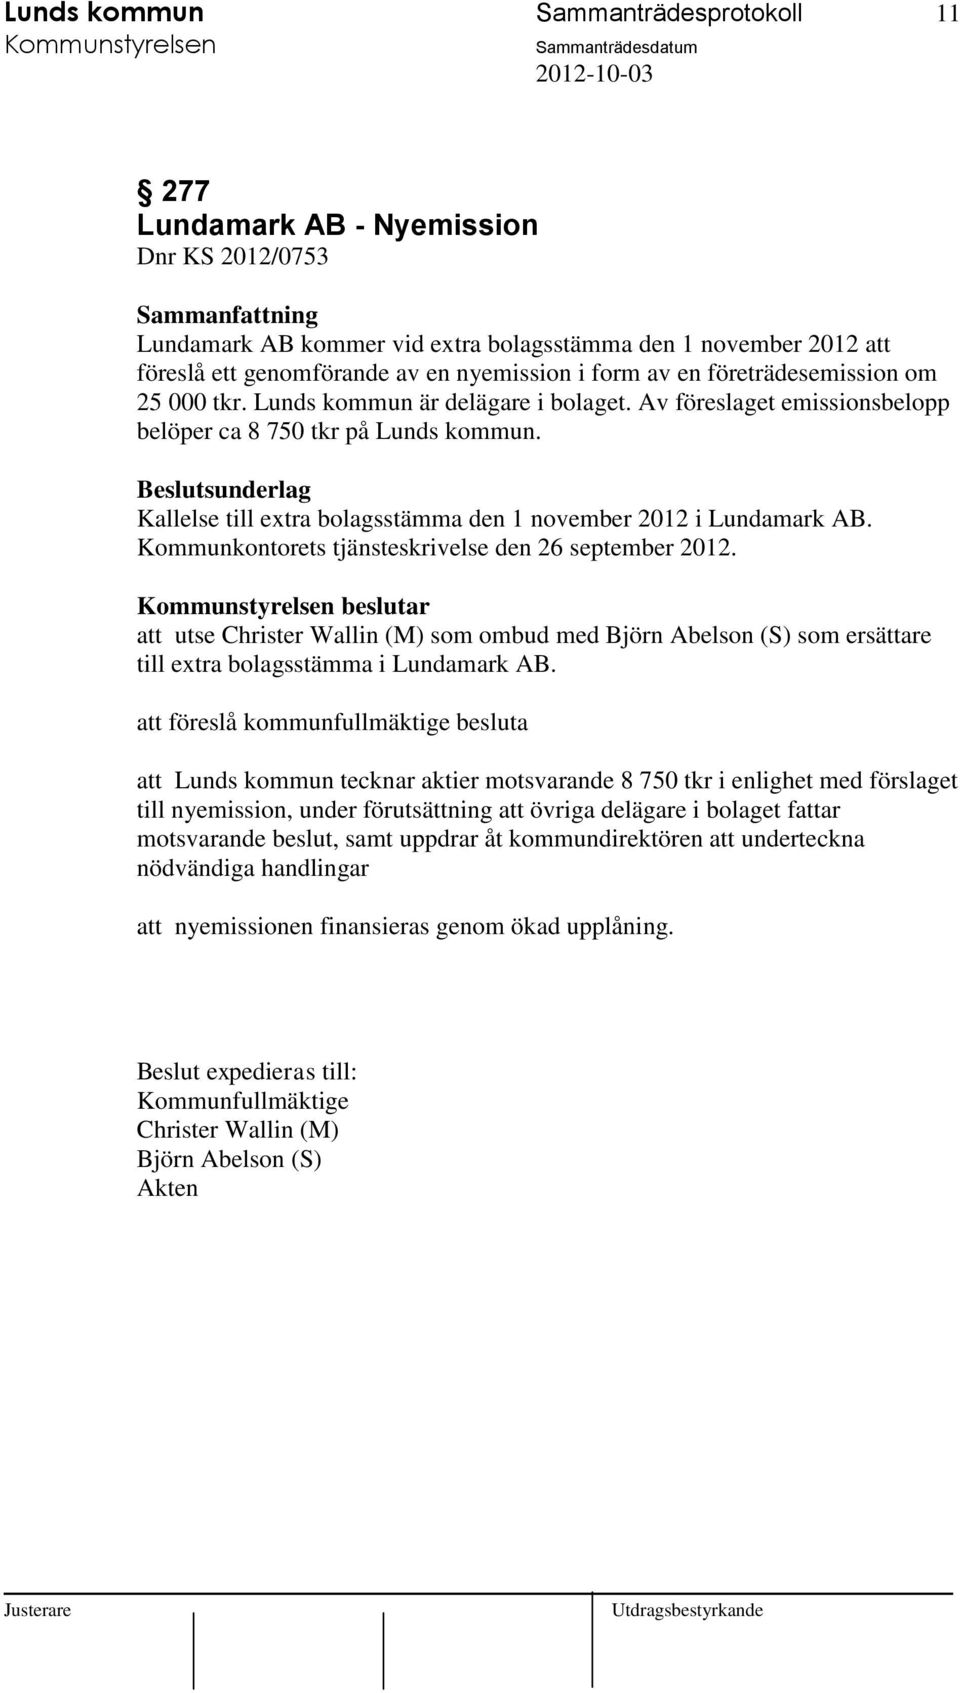 Kallelse till extra bolagsstämma den 1 november 2012 i Lundamark AB. Kommunkontorets tjänsteskrivelse den 26 september 2012.